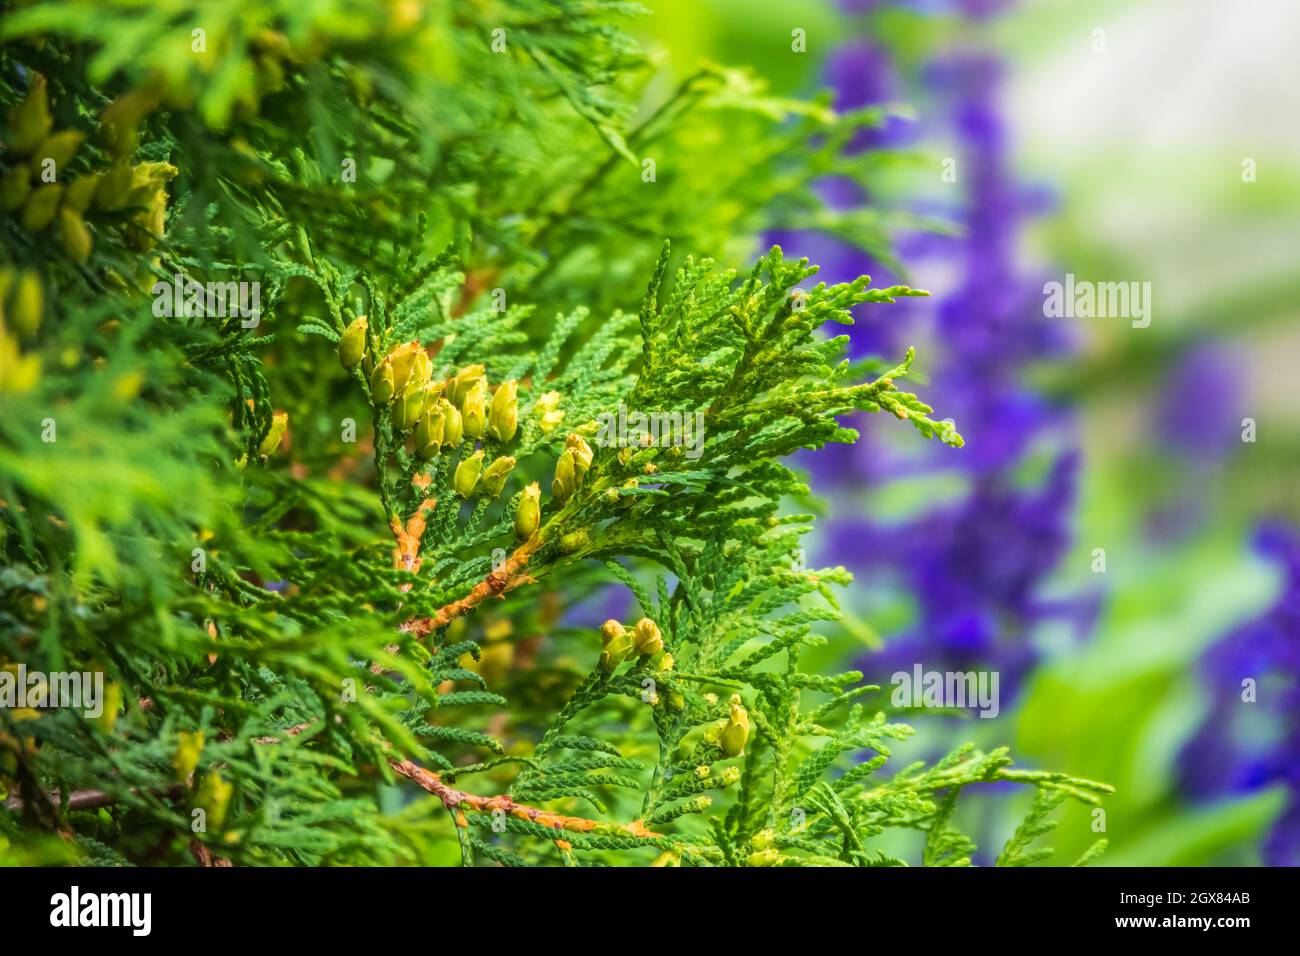 Le Bush de Thuja occidentalis est un conifères à feuilles persistantes. Gros plan de la branche de cèdre de cyprès avec un bouquet de cônes verts. Thuja occidentalis, également connu Banque D'Images